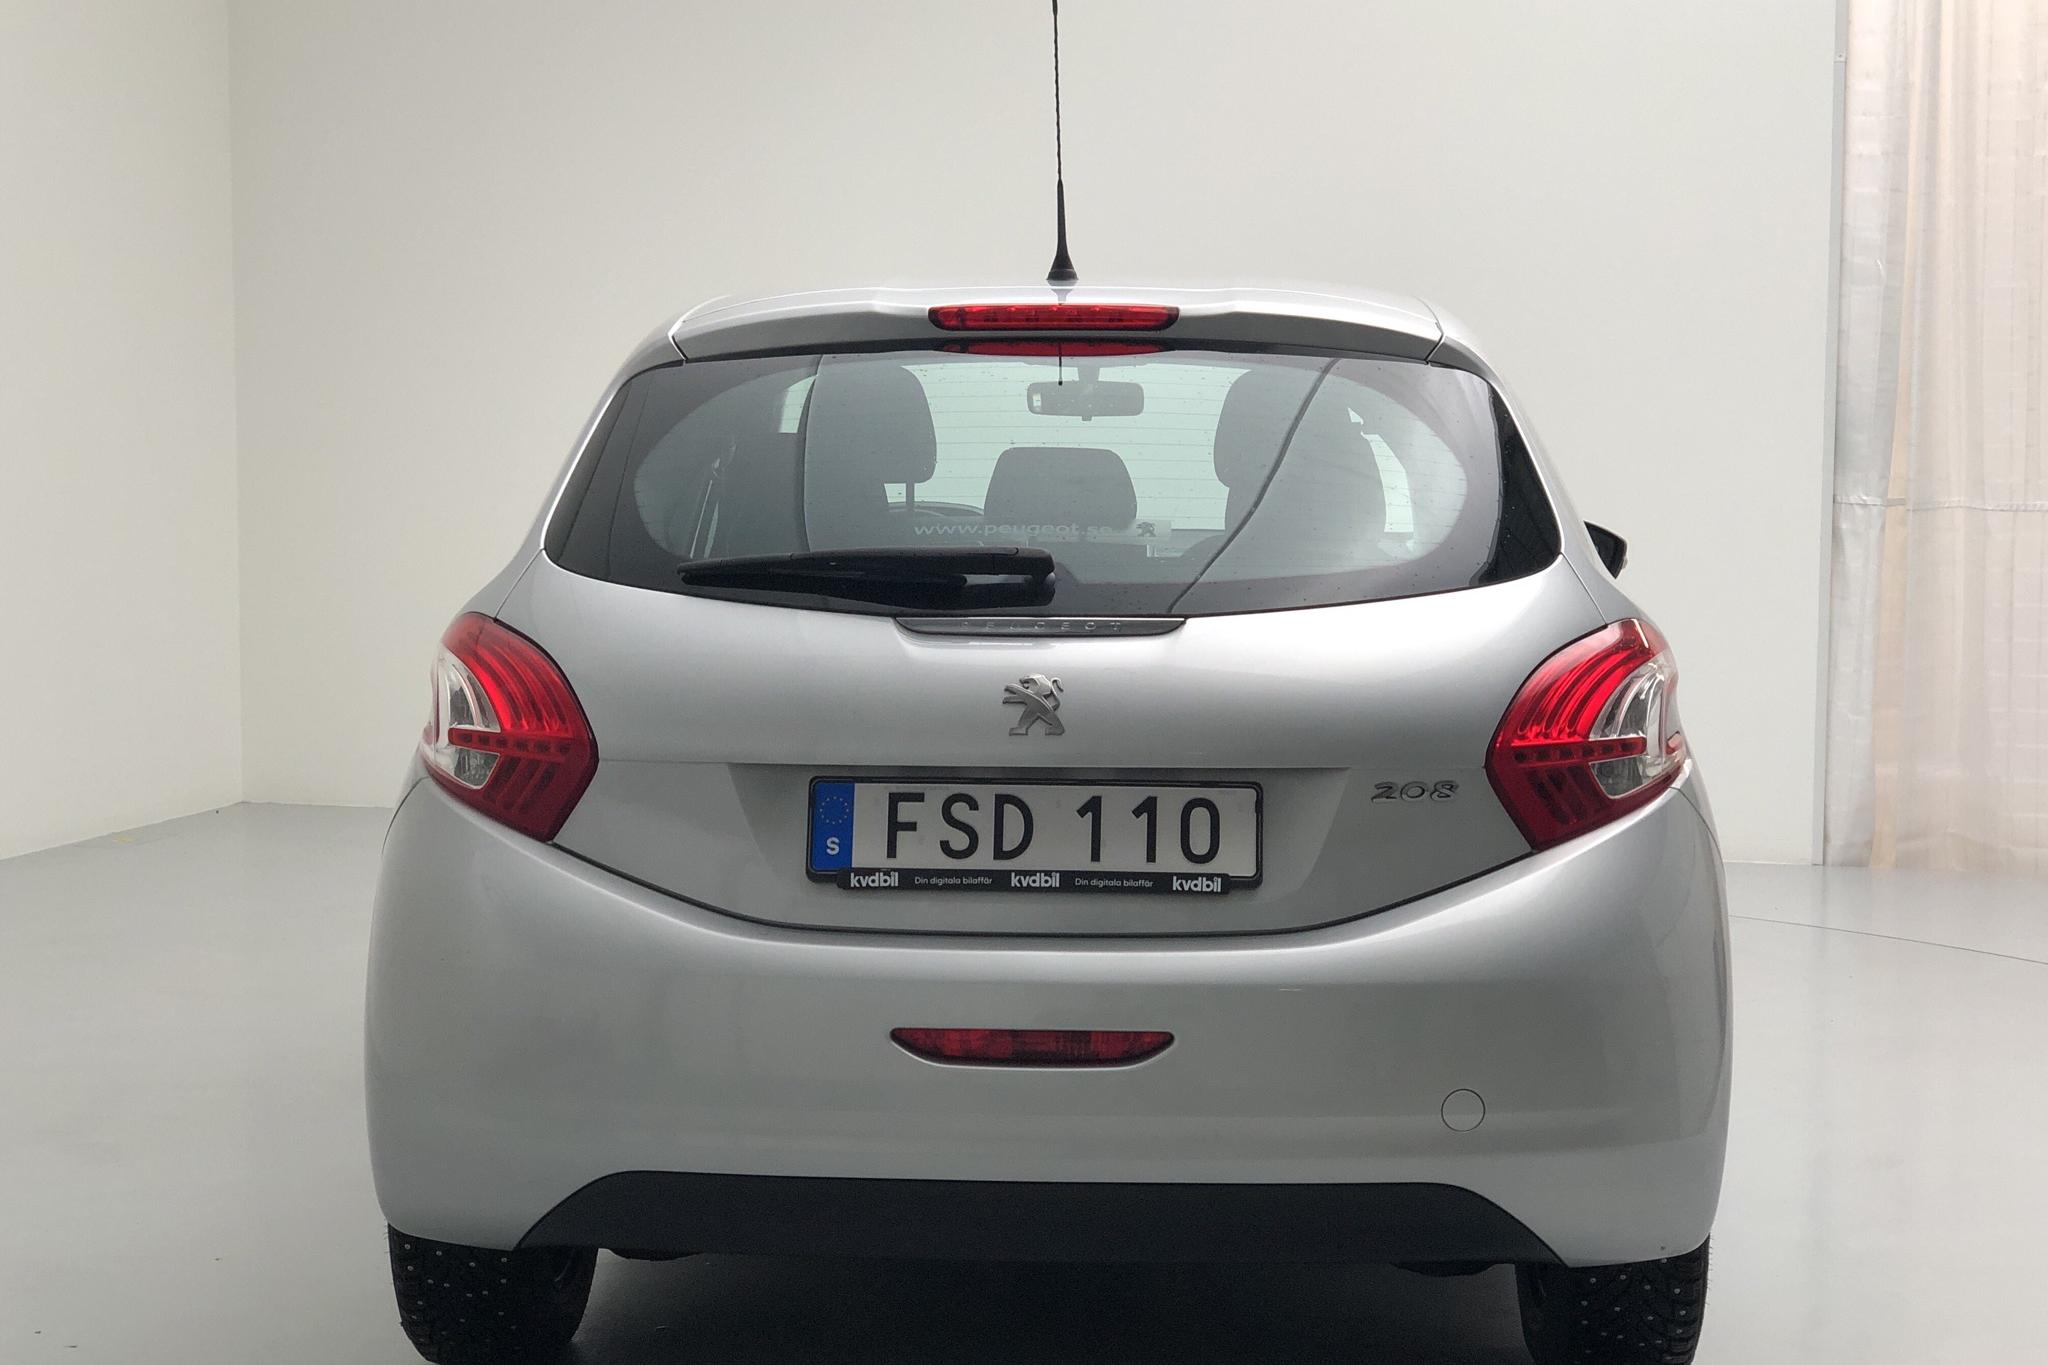 Peugeot 208 1.2 VTi 5dr (82hk) - 139 950 km - Manual - Light Grey - 2015